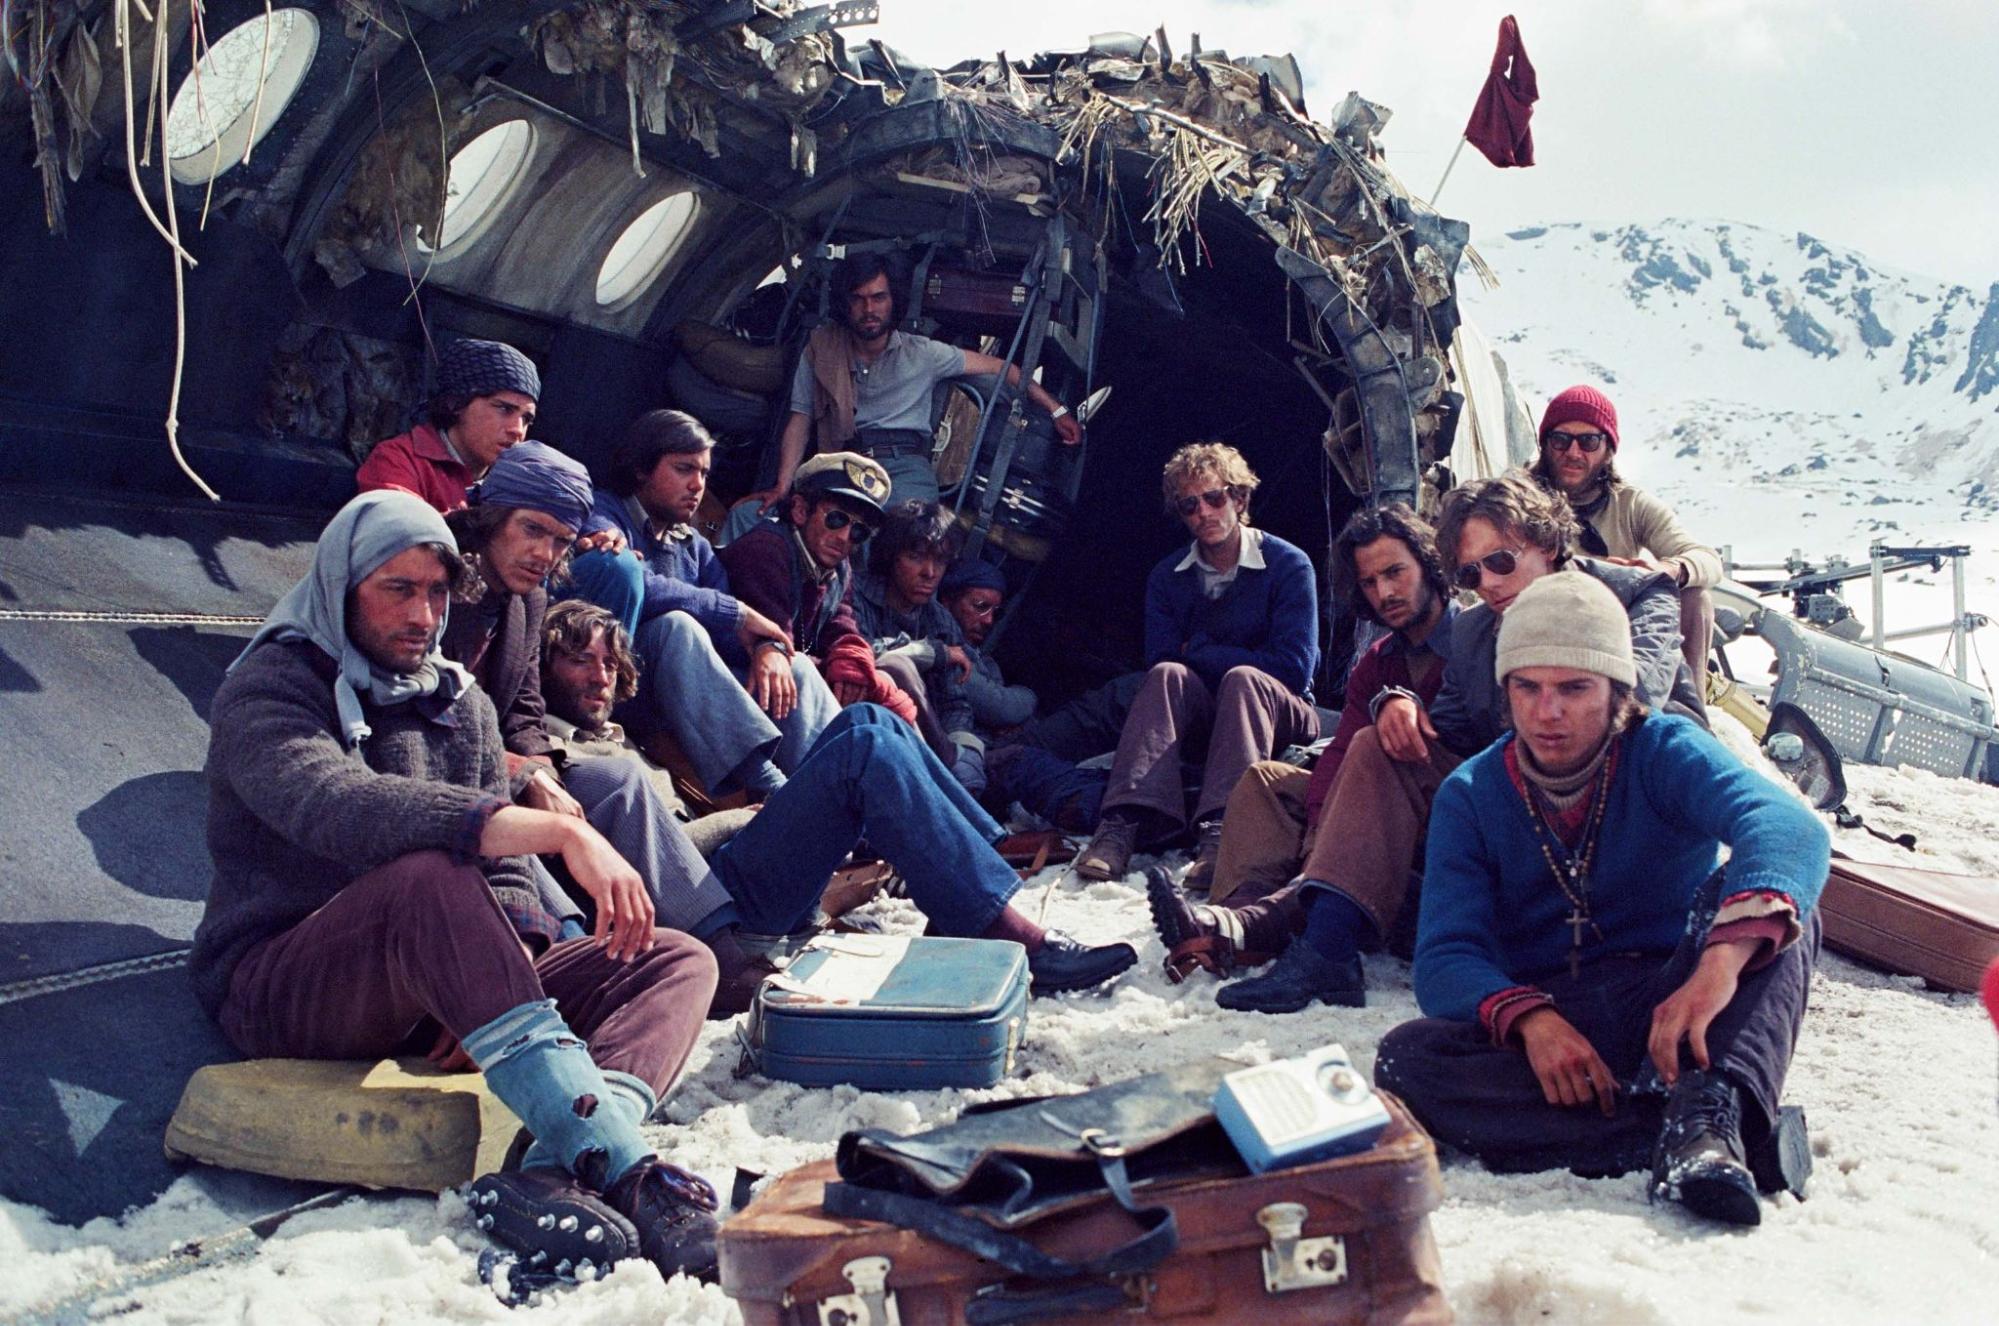 A foto é uma cena do filme A Sociedade da Neve. A foto mostra 14 dos 16 sobreviventes sentados na frente da fuselagem do avião. Estão sentados na neve, alguns em cima da lataria ou de malas. O horizonte atrás do avião mostra as cordilheiras dos Andes